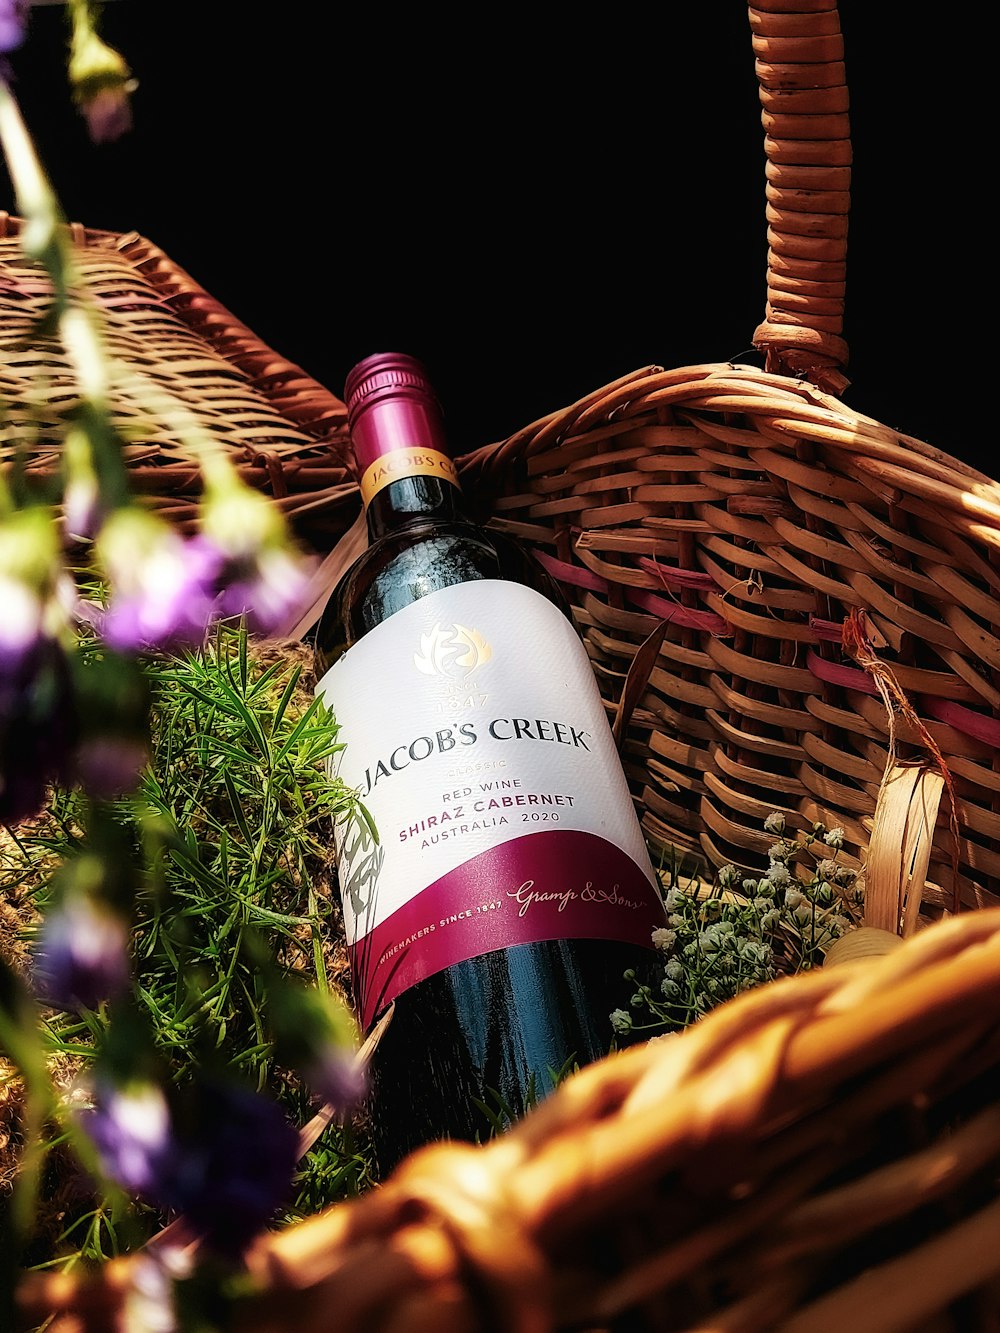 a bottle of wine sitting in a basket